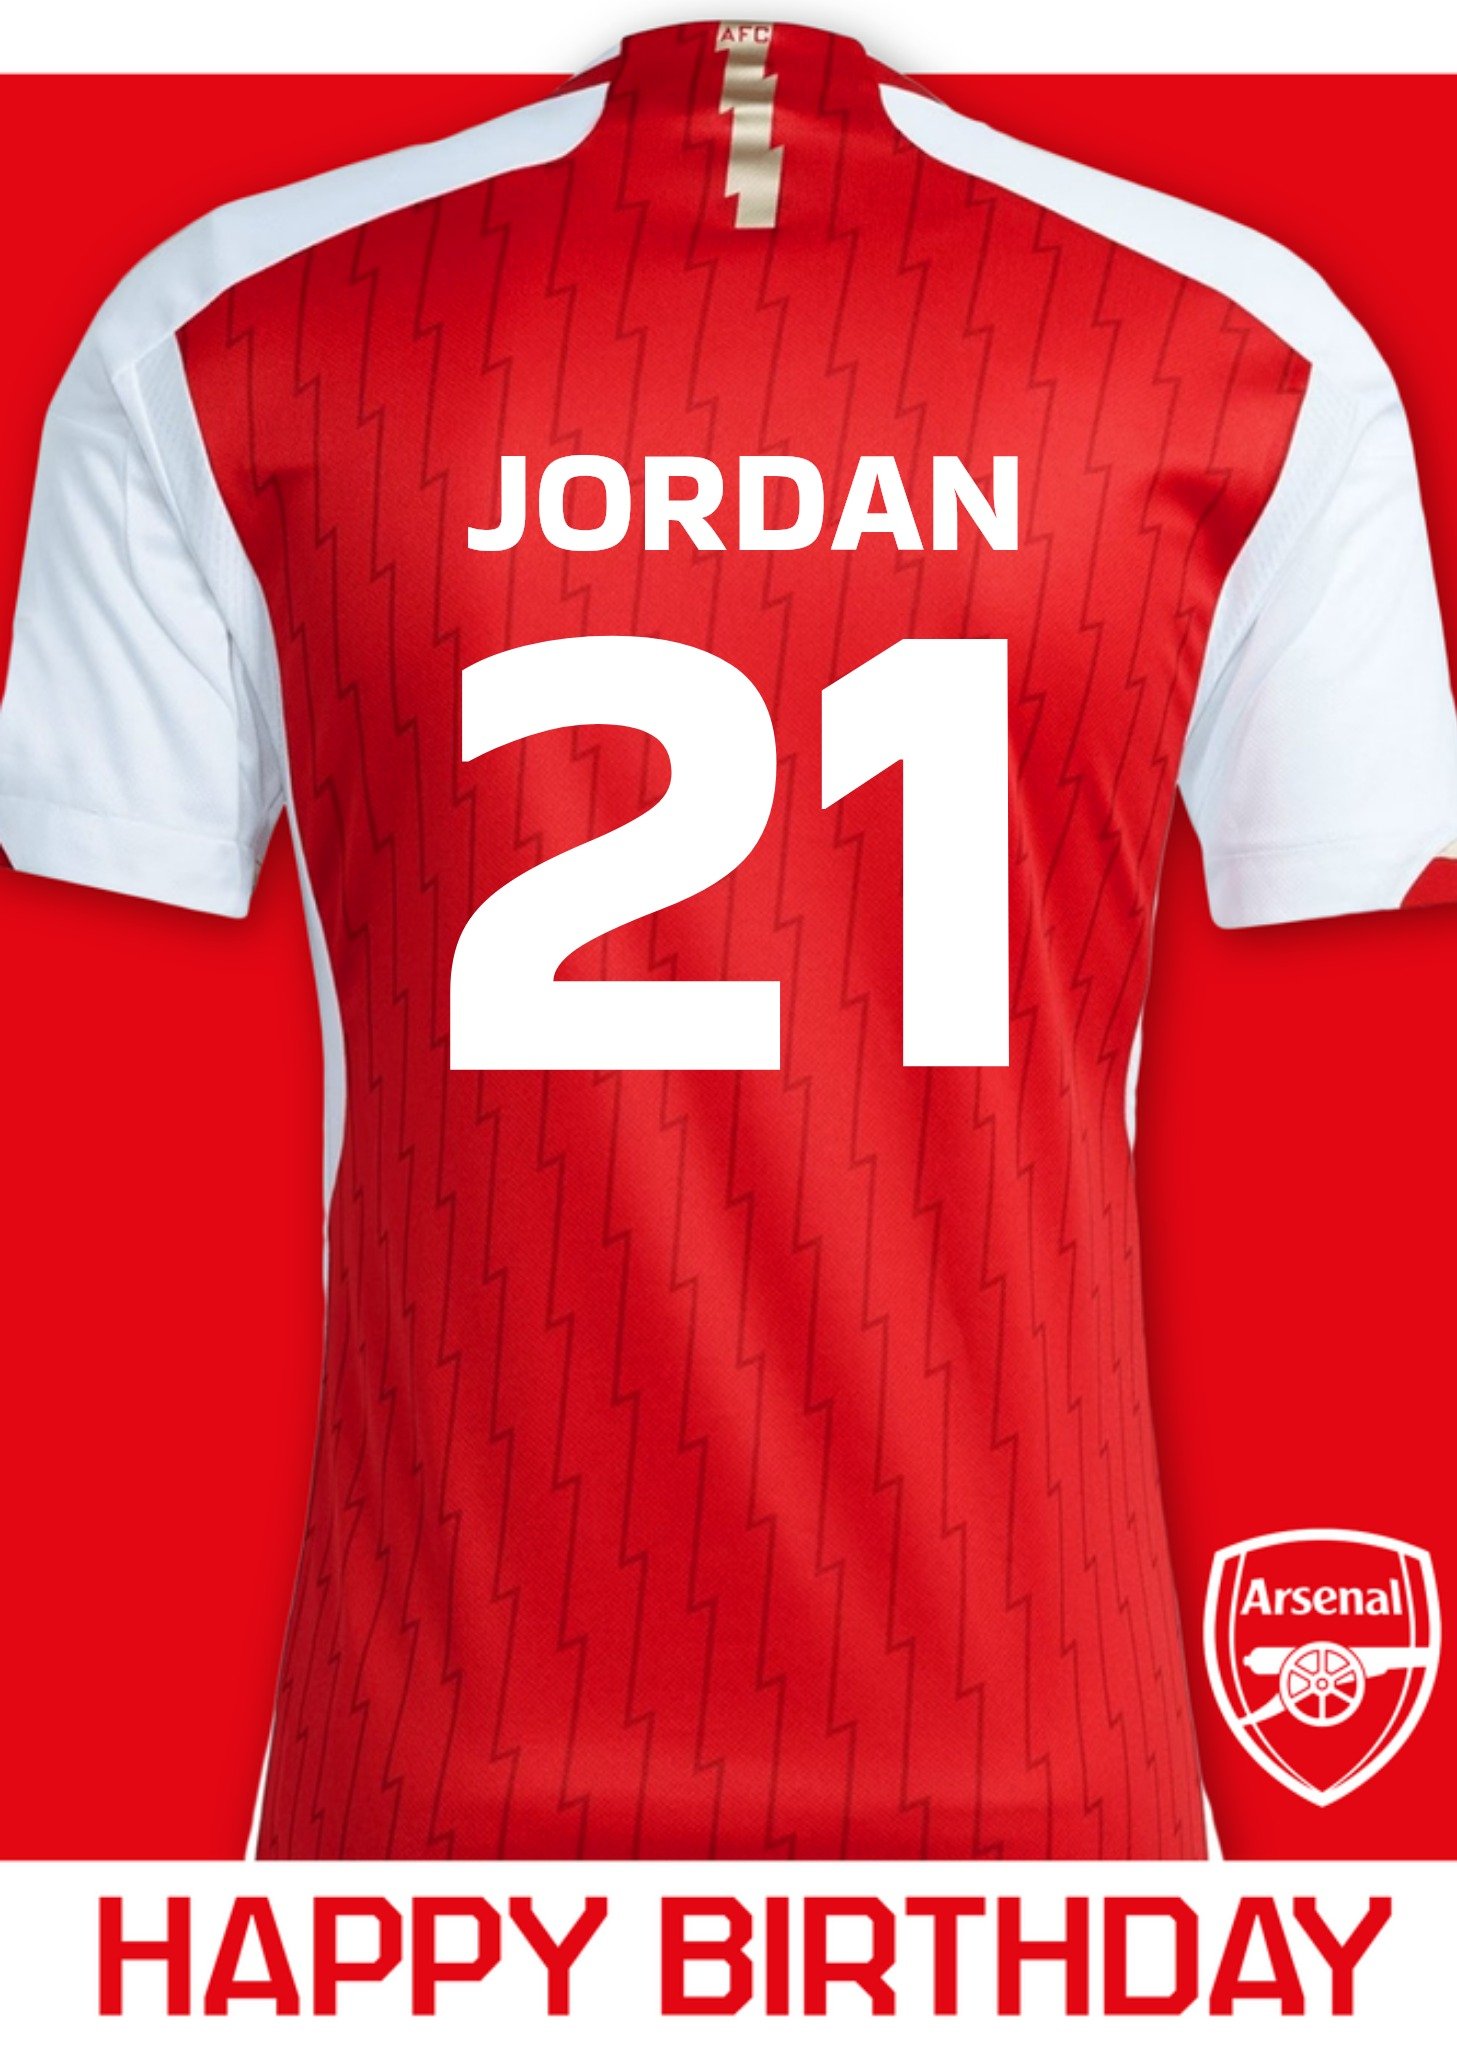 Arsenal - Verjaardagskaart - Voetbal shirt - Met naam